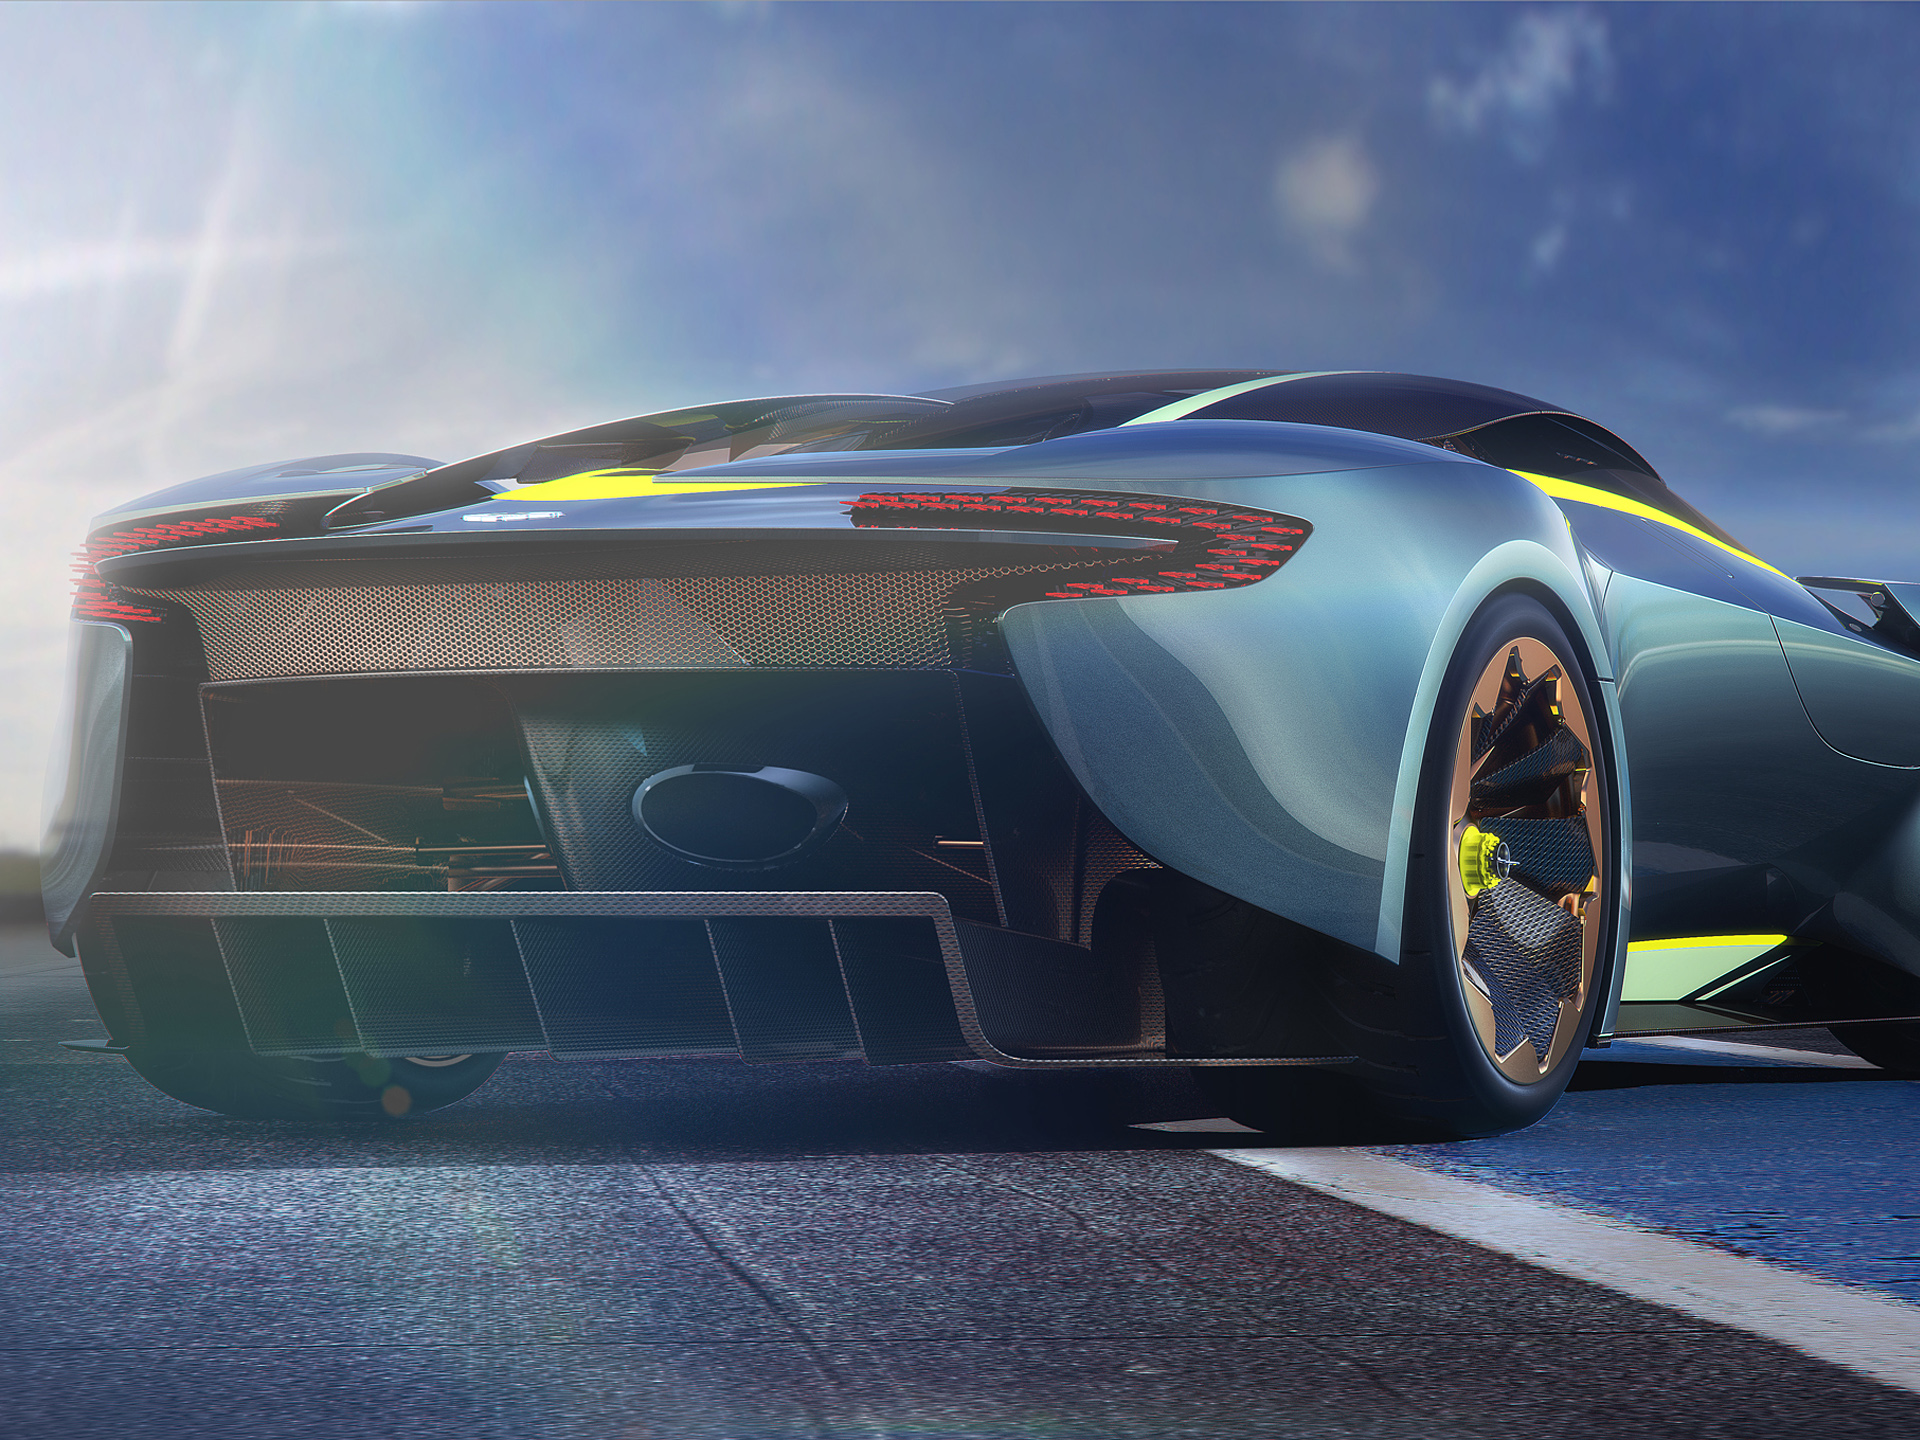  2014 Aston Martin DP-100 Vision Gran Turismo Concept Wallpaper.